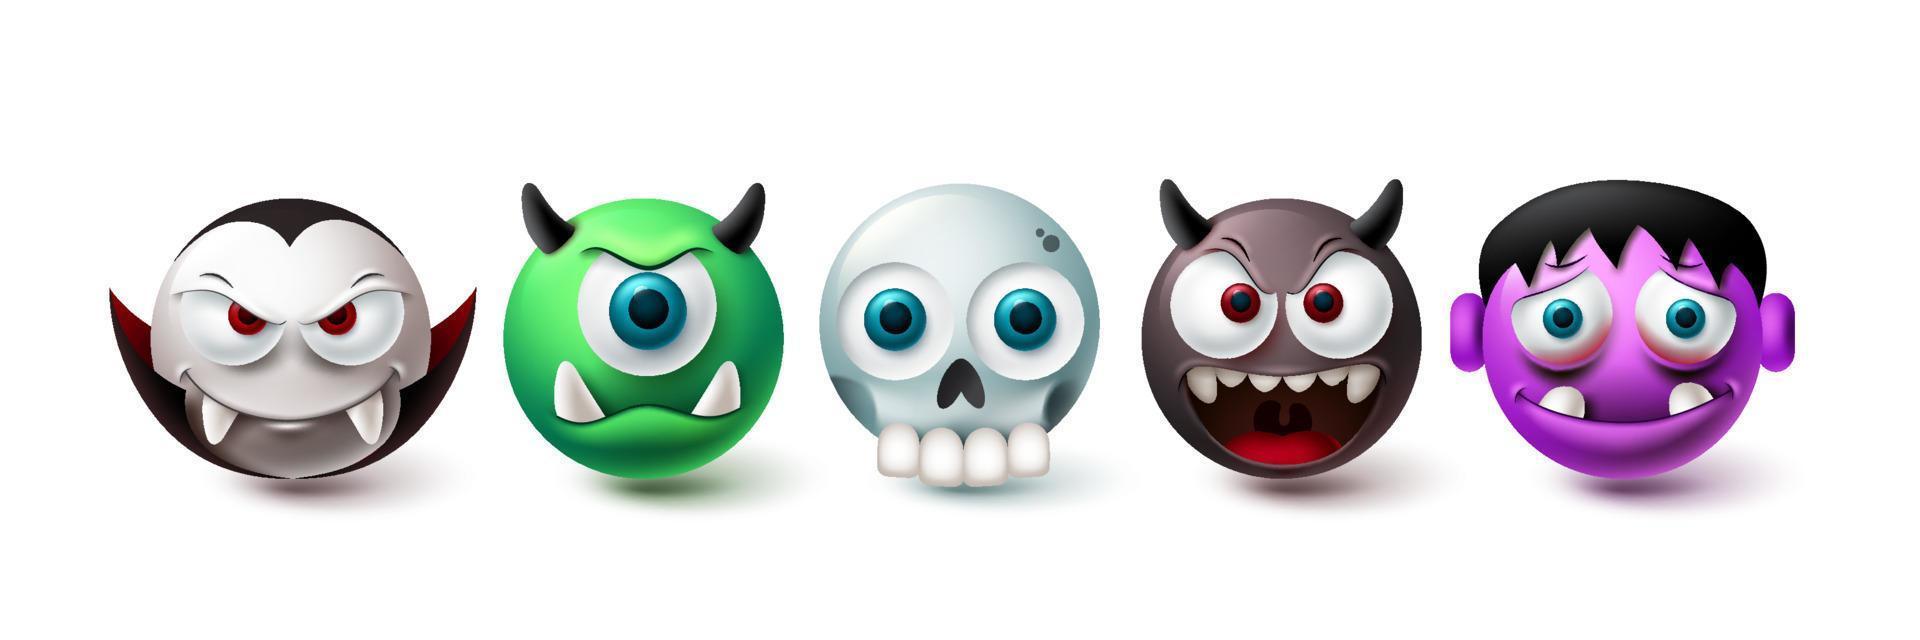 insieme di vettore di halloween emoji. elementi grafici di emoji nella collezione di personaggi inquietanti, horror e spaventosi isolati in uno sfondo bianco. illustrazione vettoriale